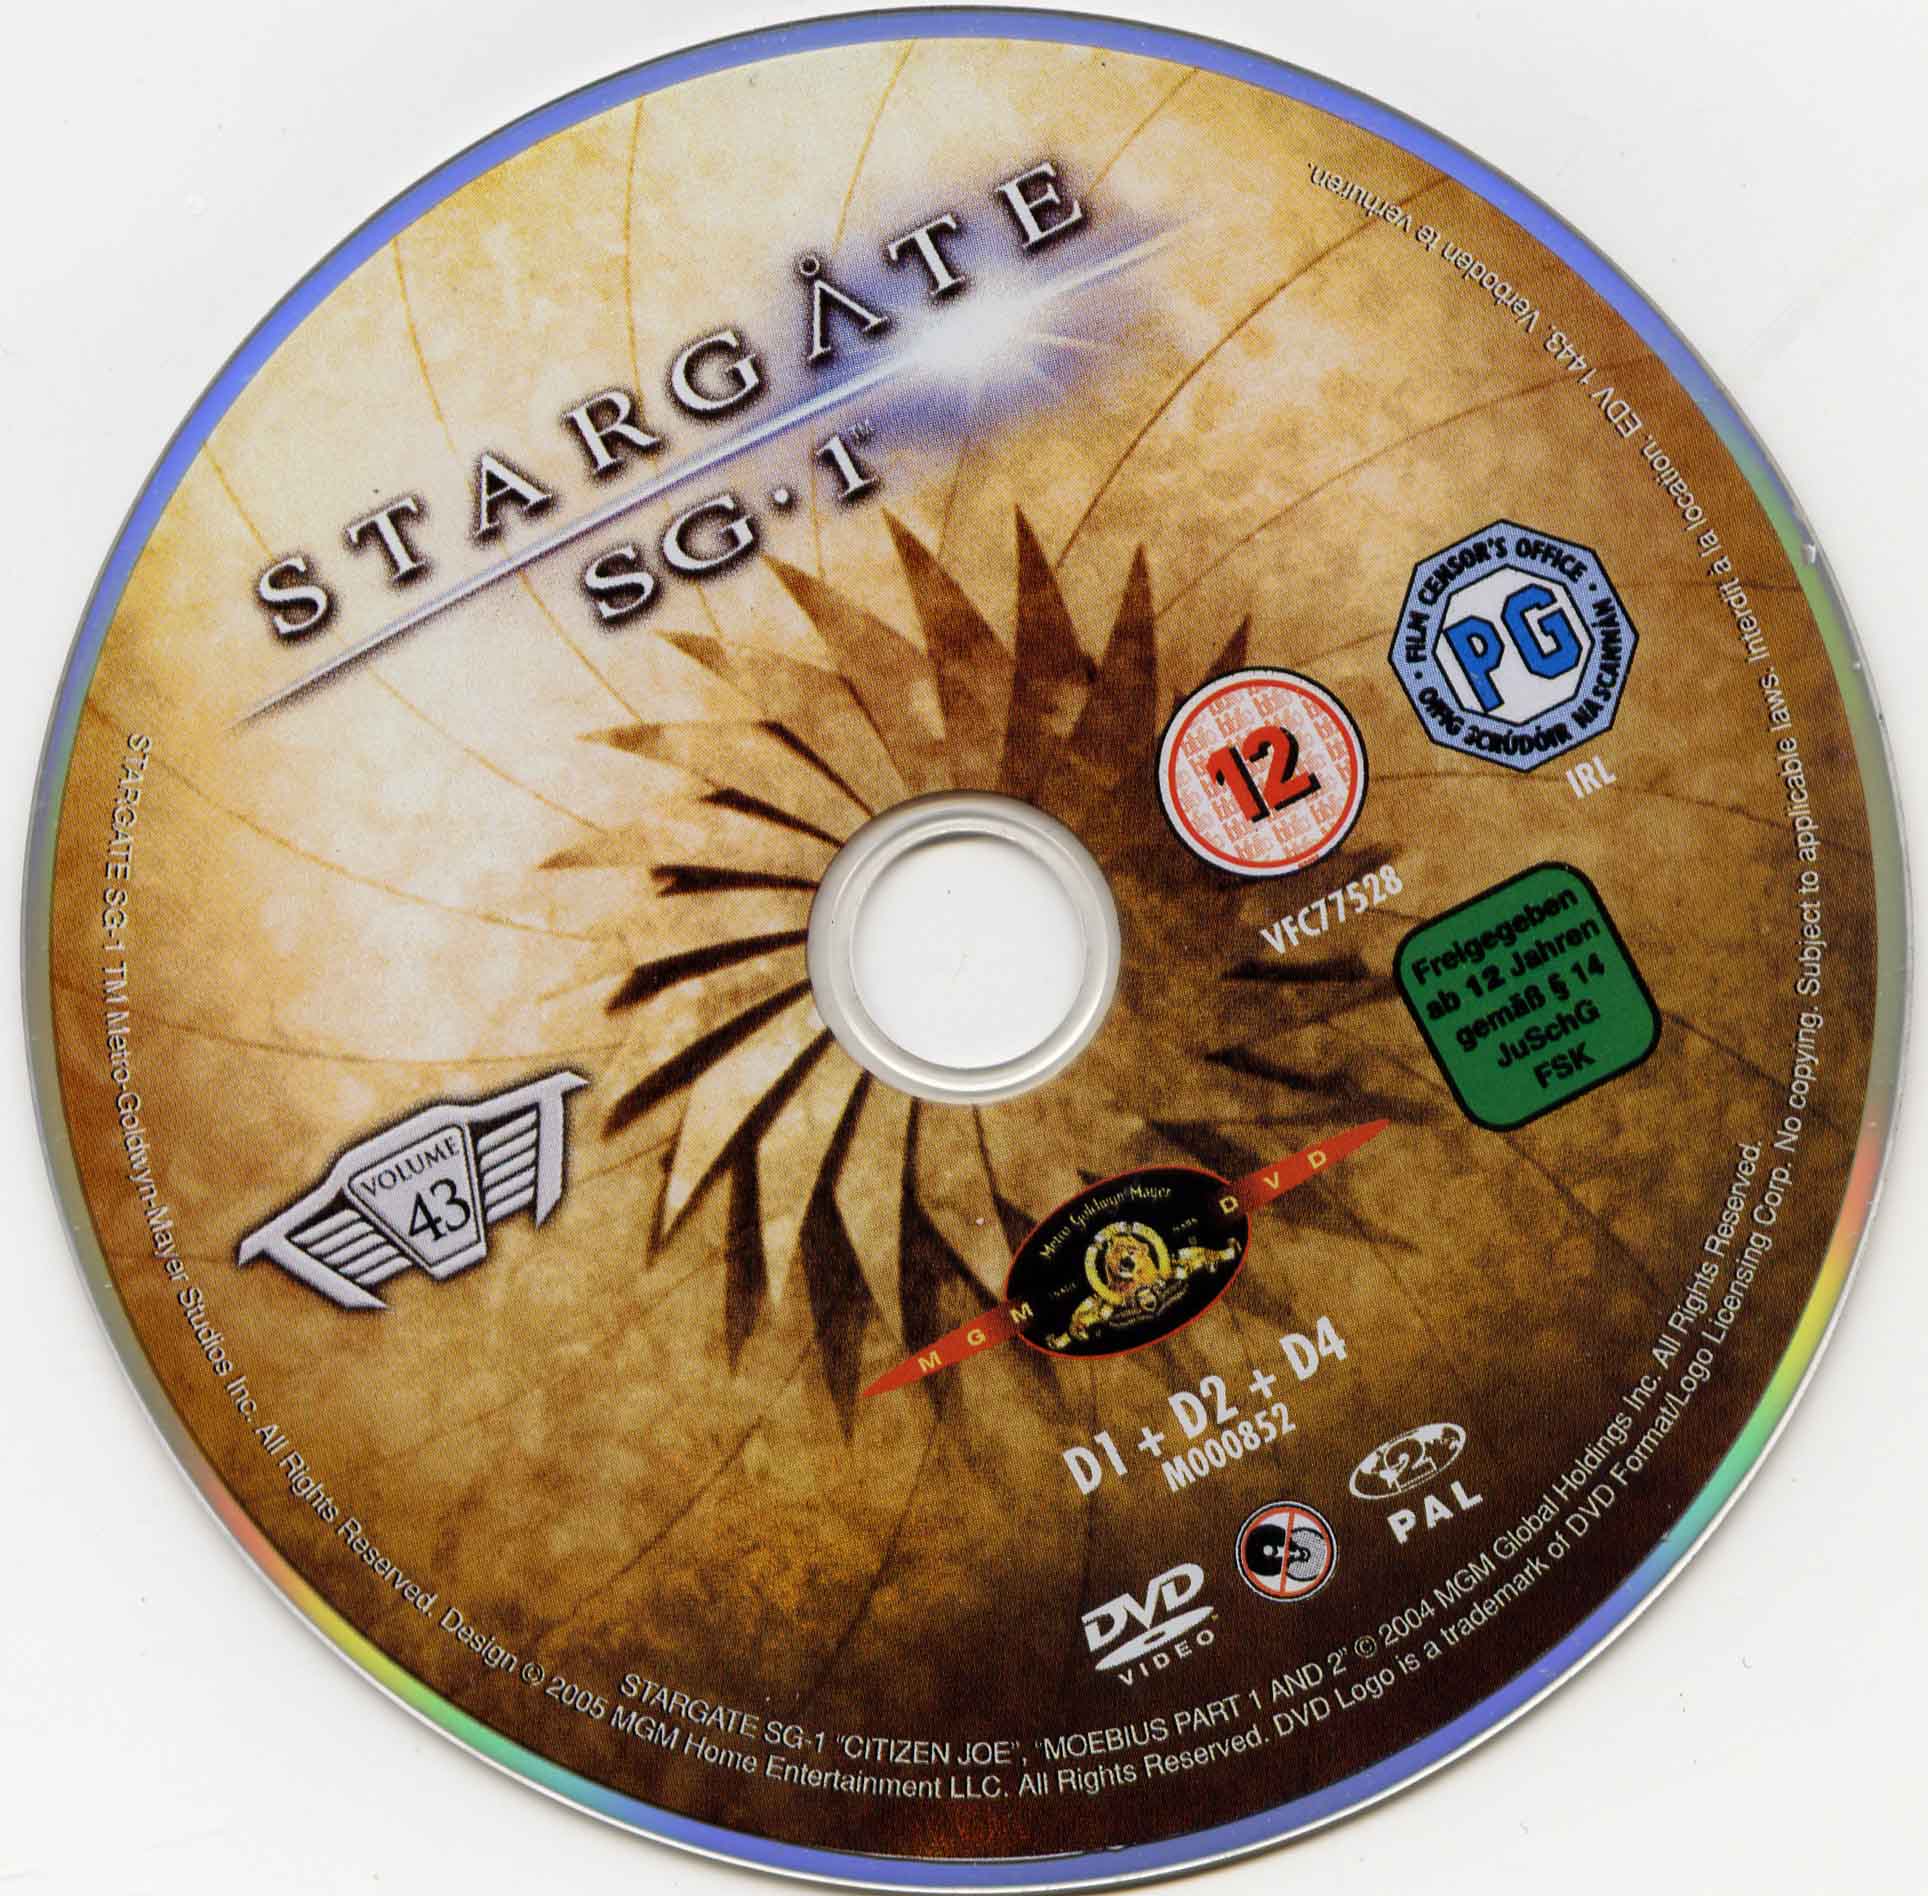 Stargate SG1 vol 43